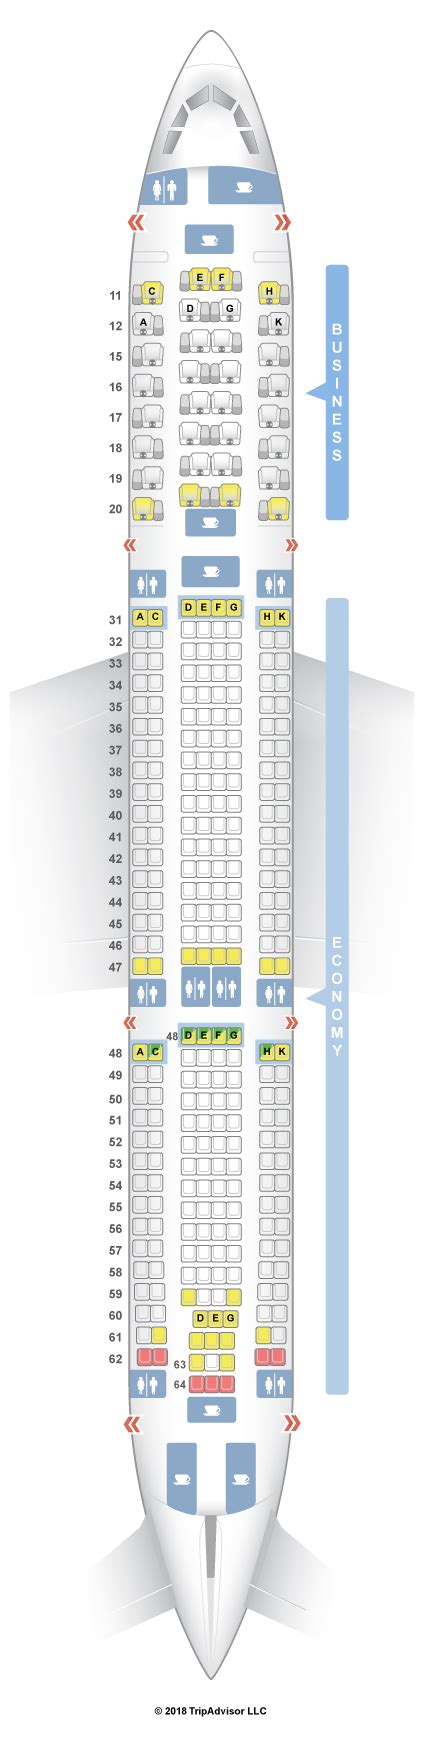 Seatguru Seat Map Hong Kong Airlines Airbus A330 300 333 V2